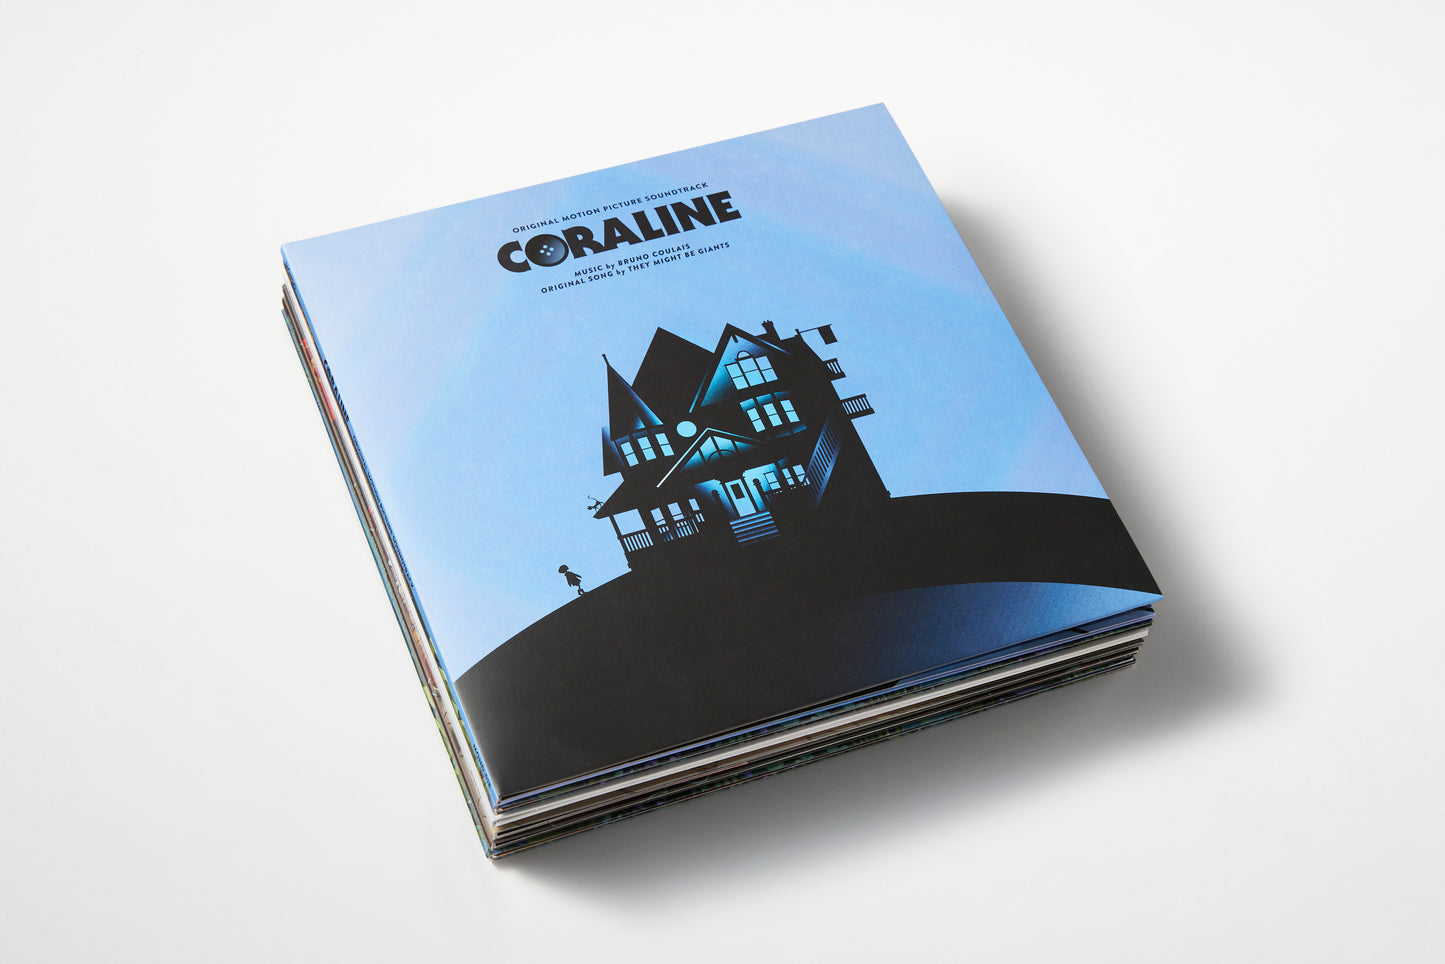 Studio Exclusive Coraline Vinyl